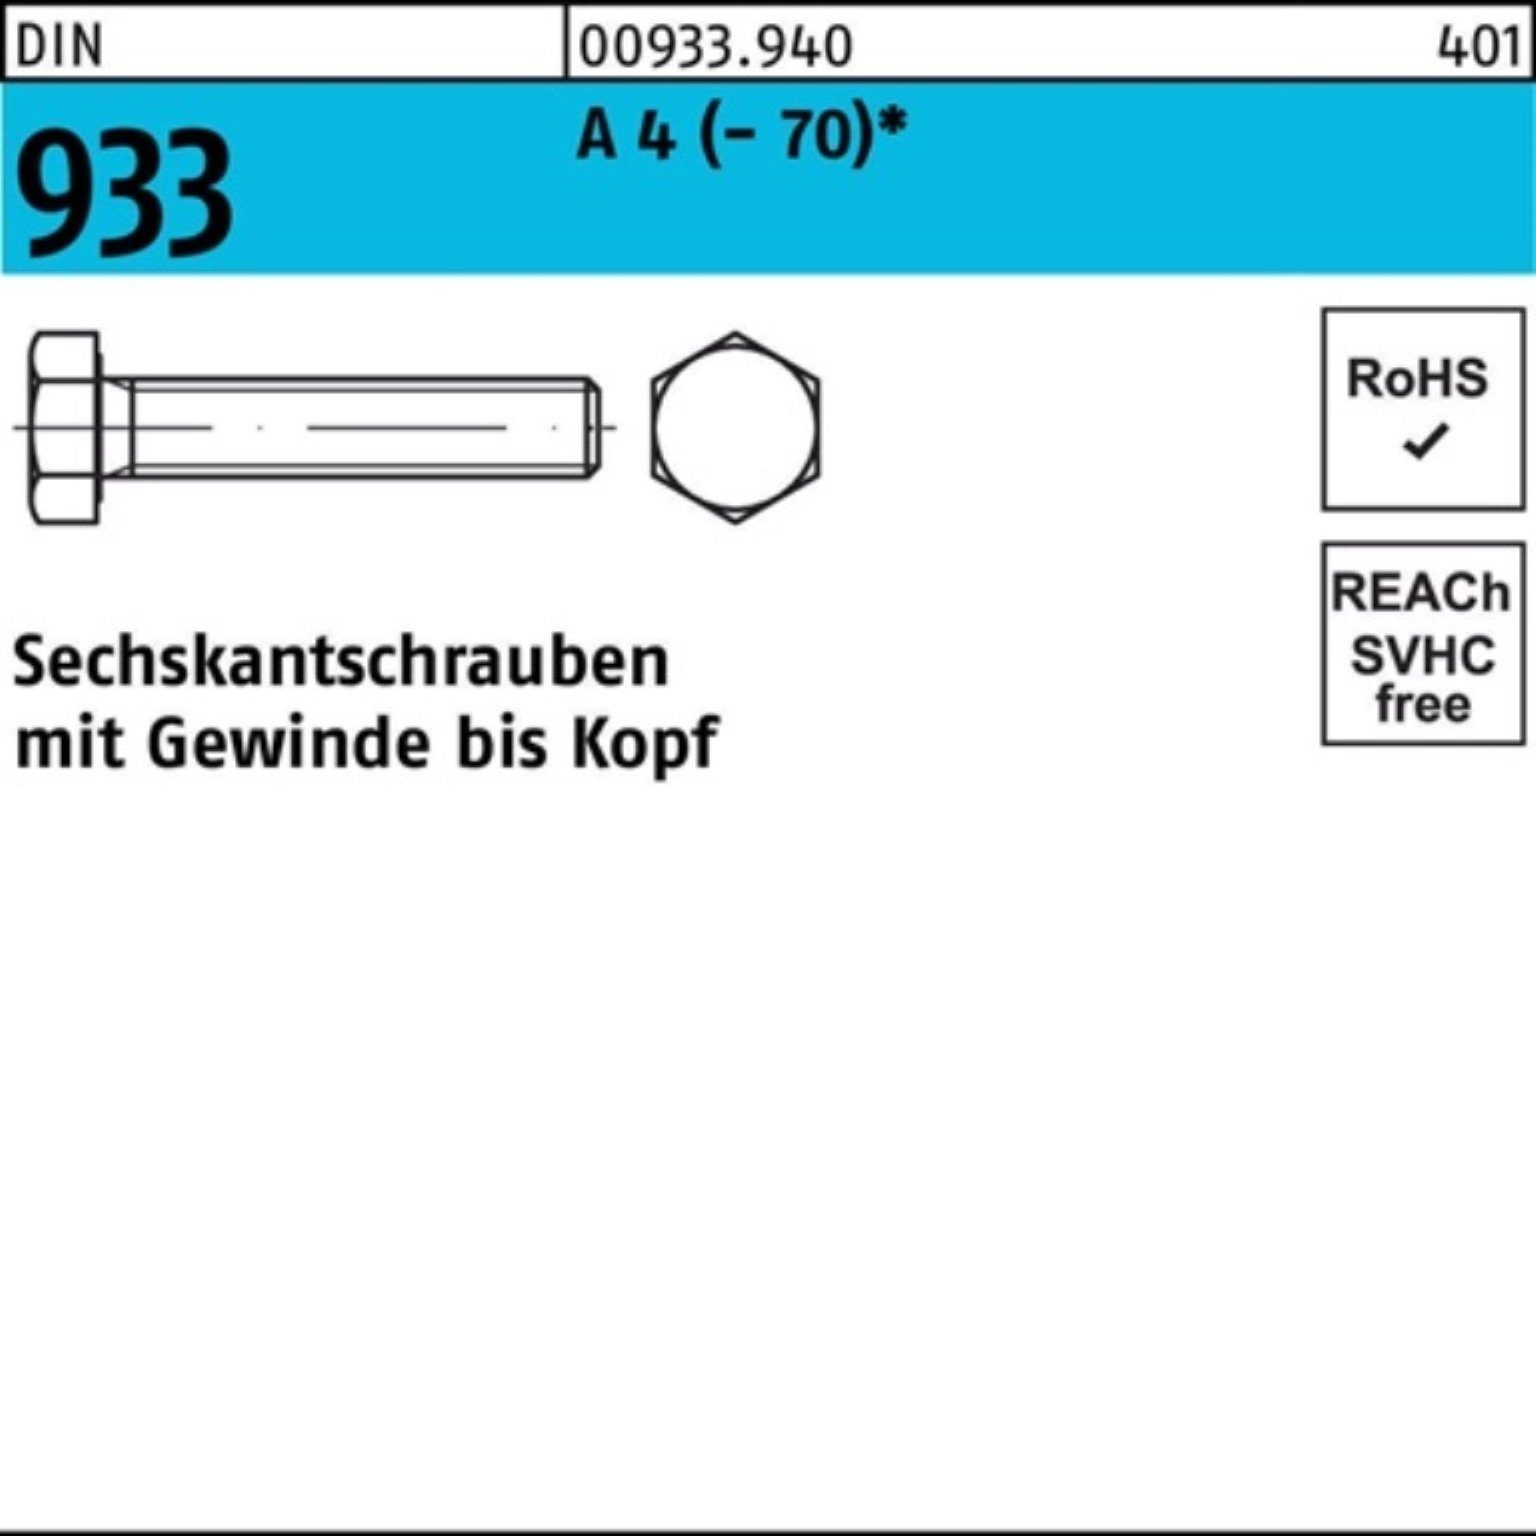 Reyher Sechskantschraube 100er Pack Sechskantschraube DIN 933 VG M6x 10 A 4 (70) 100 Stück D